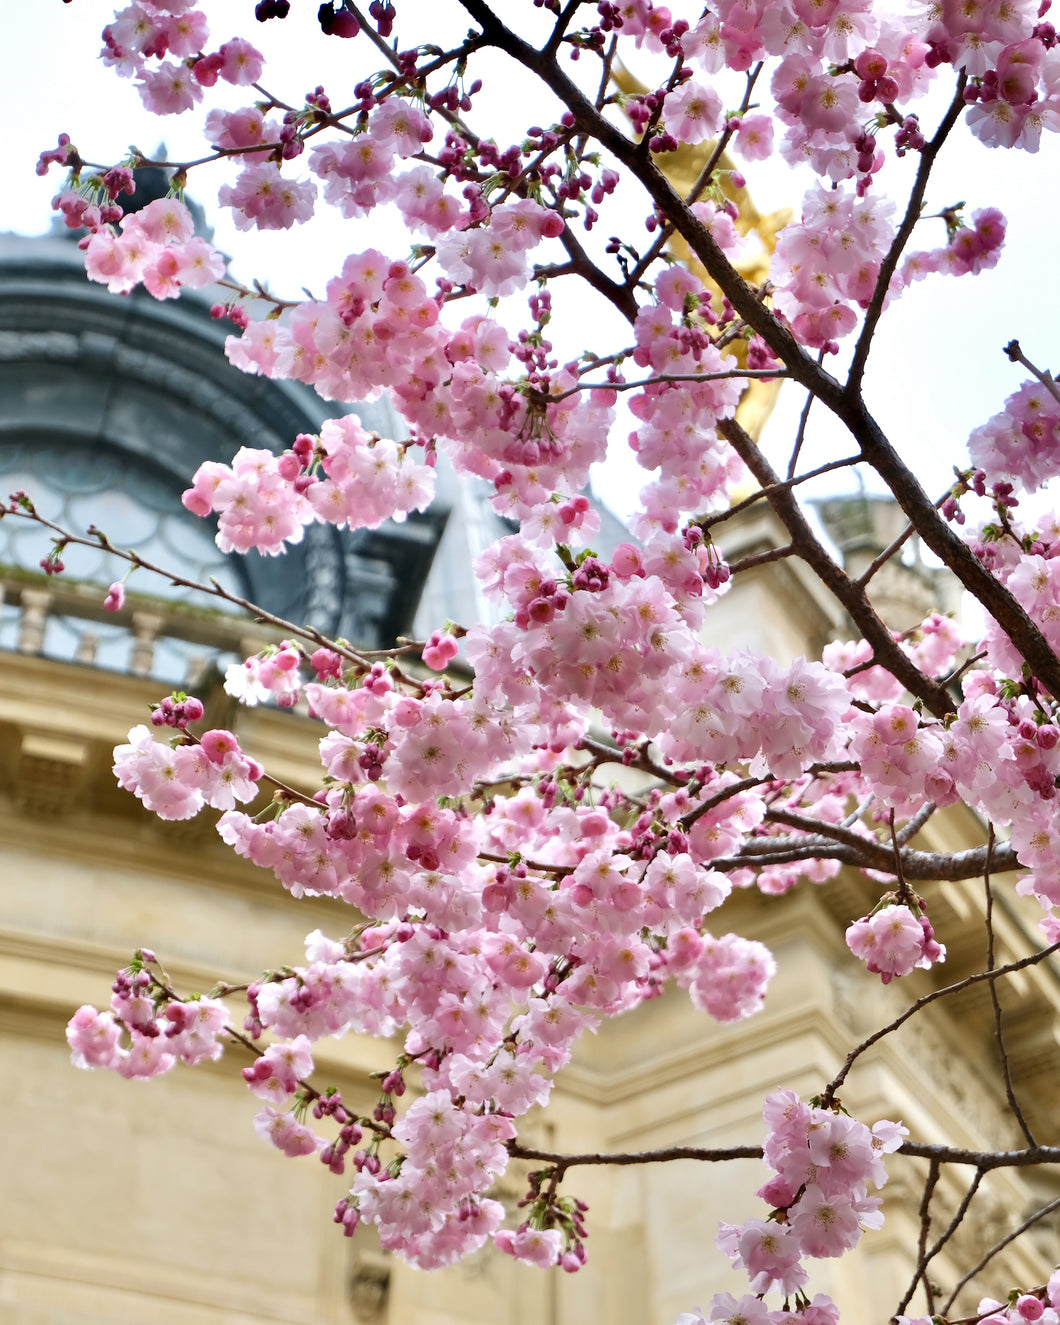 Petit Palais Cherry Blossoms - Paris Print - La Porte Bonheur